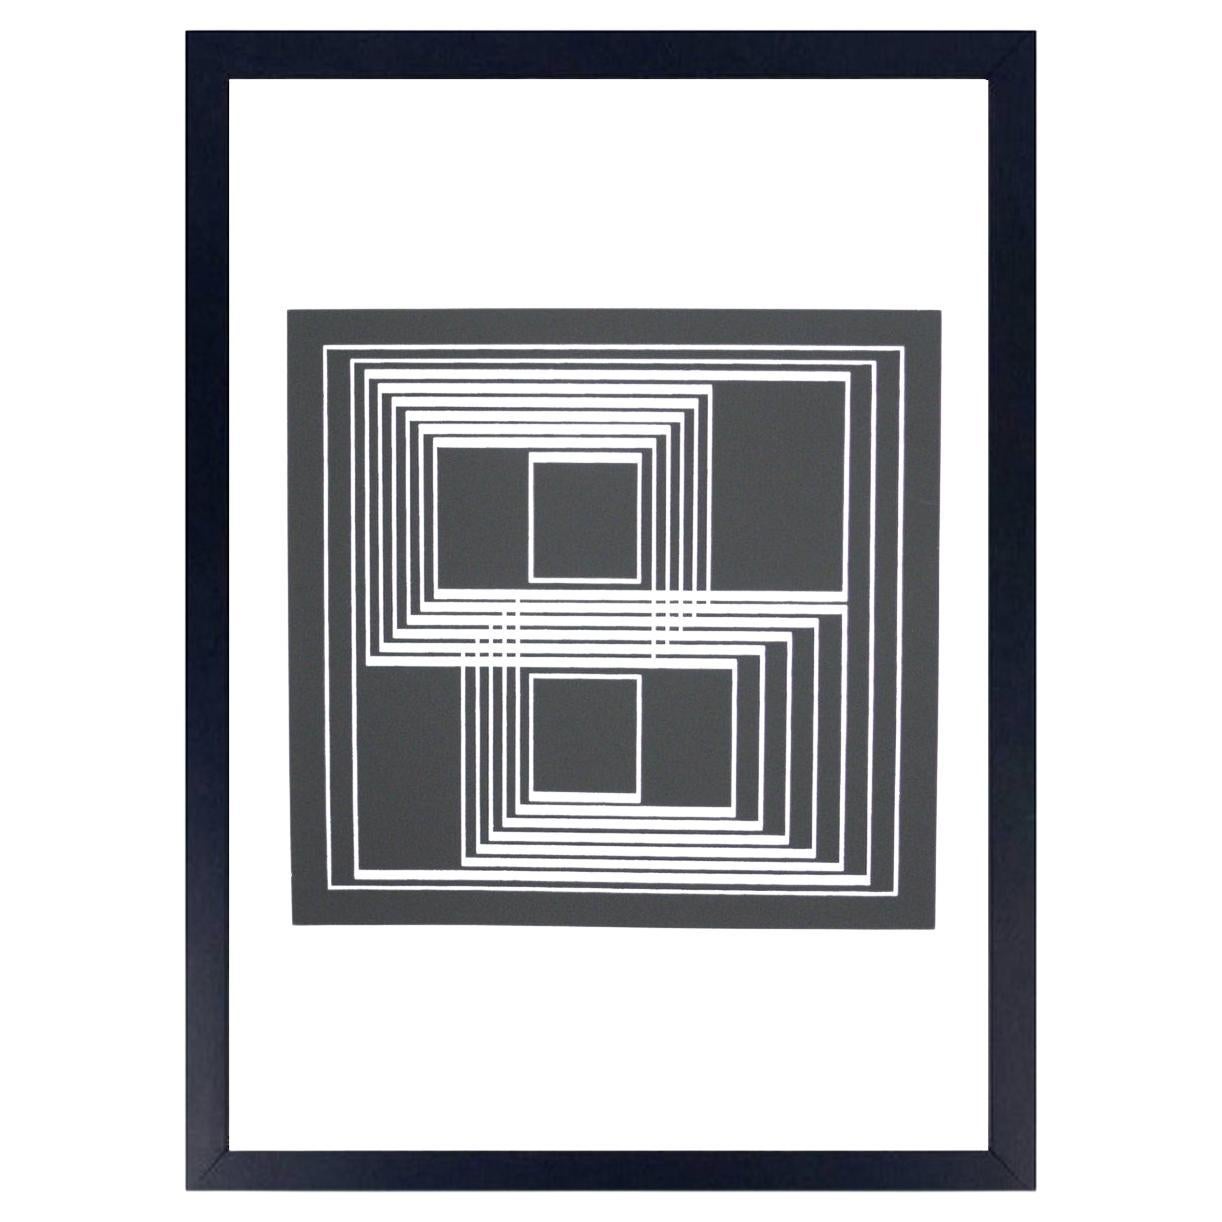 Abstrakter Siebdruck „Seclusion“ von Josef Albers, signiert